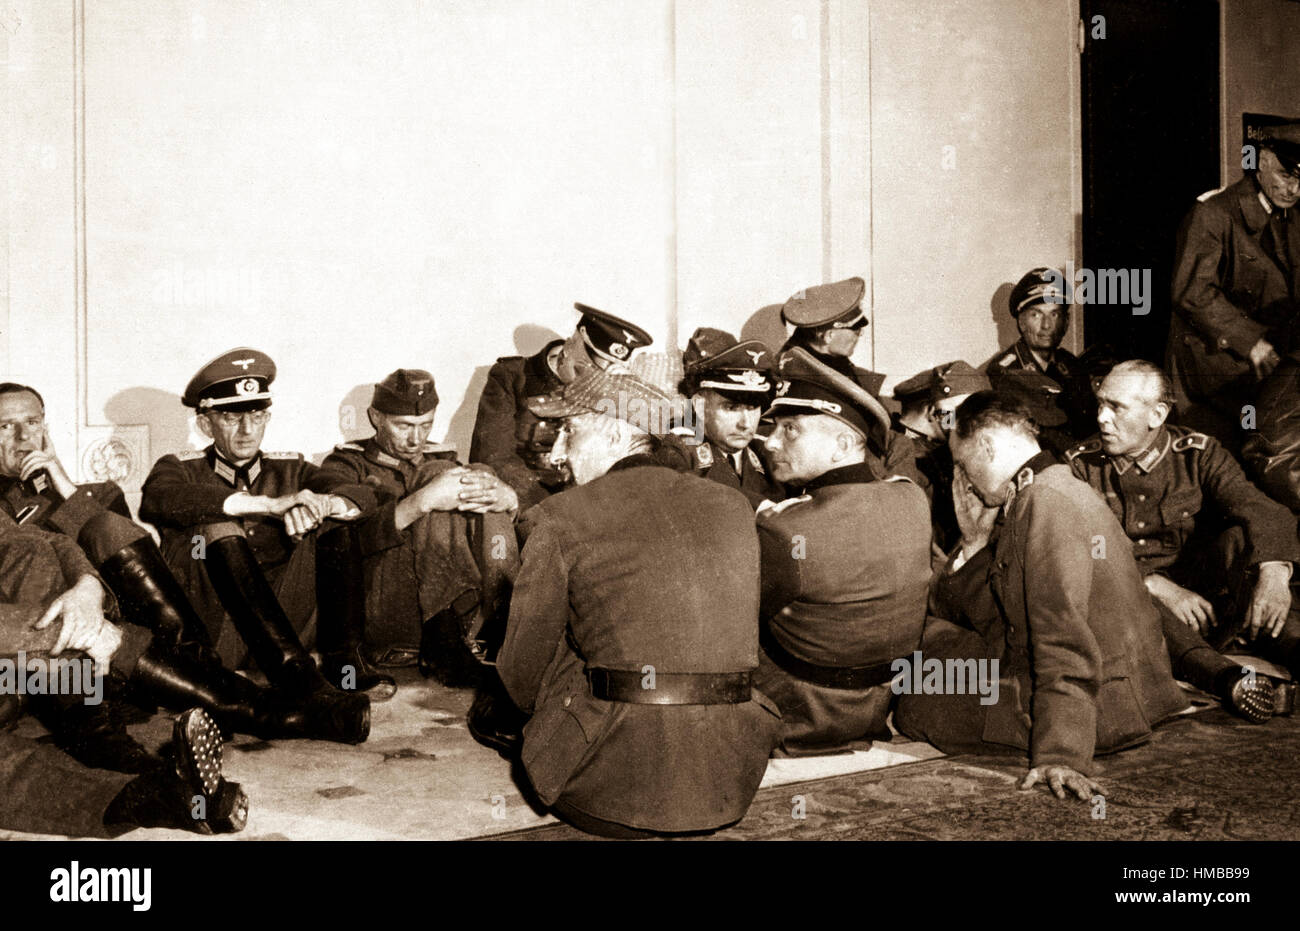 Hochrangige deutsche Offiziere von freien Franzosen beschlagnahmt werden Truppen die Hauptstadt des Landes befreit in das Hotel Majestic, Hauptquartier der Wehrmacht in den Tagen der Nazi-Okkupation untergebracht.  Paris, Frankreich, 26. August 1944. Lovell. (Armee) NARA-DATEI #: 111-SC-193010 KRIEG & KONFLIKT BUCH #: 1293 Stockfoto